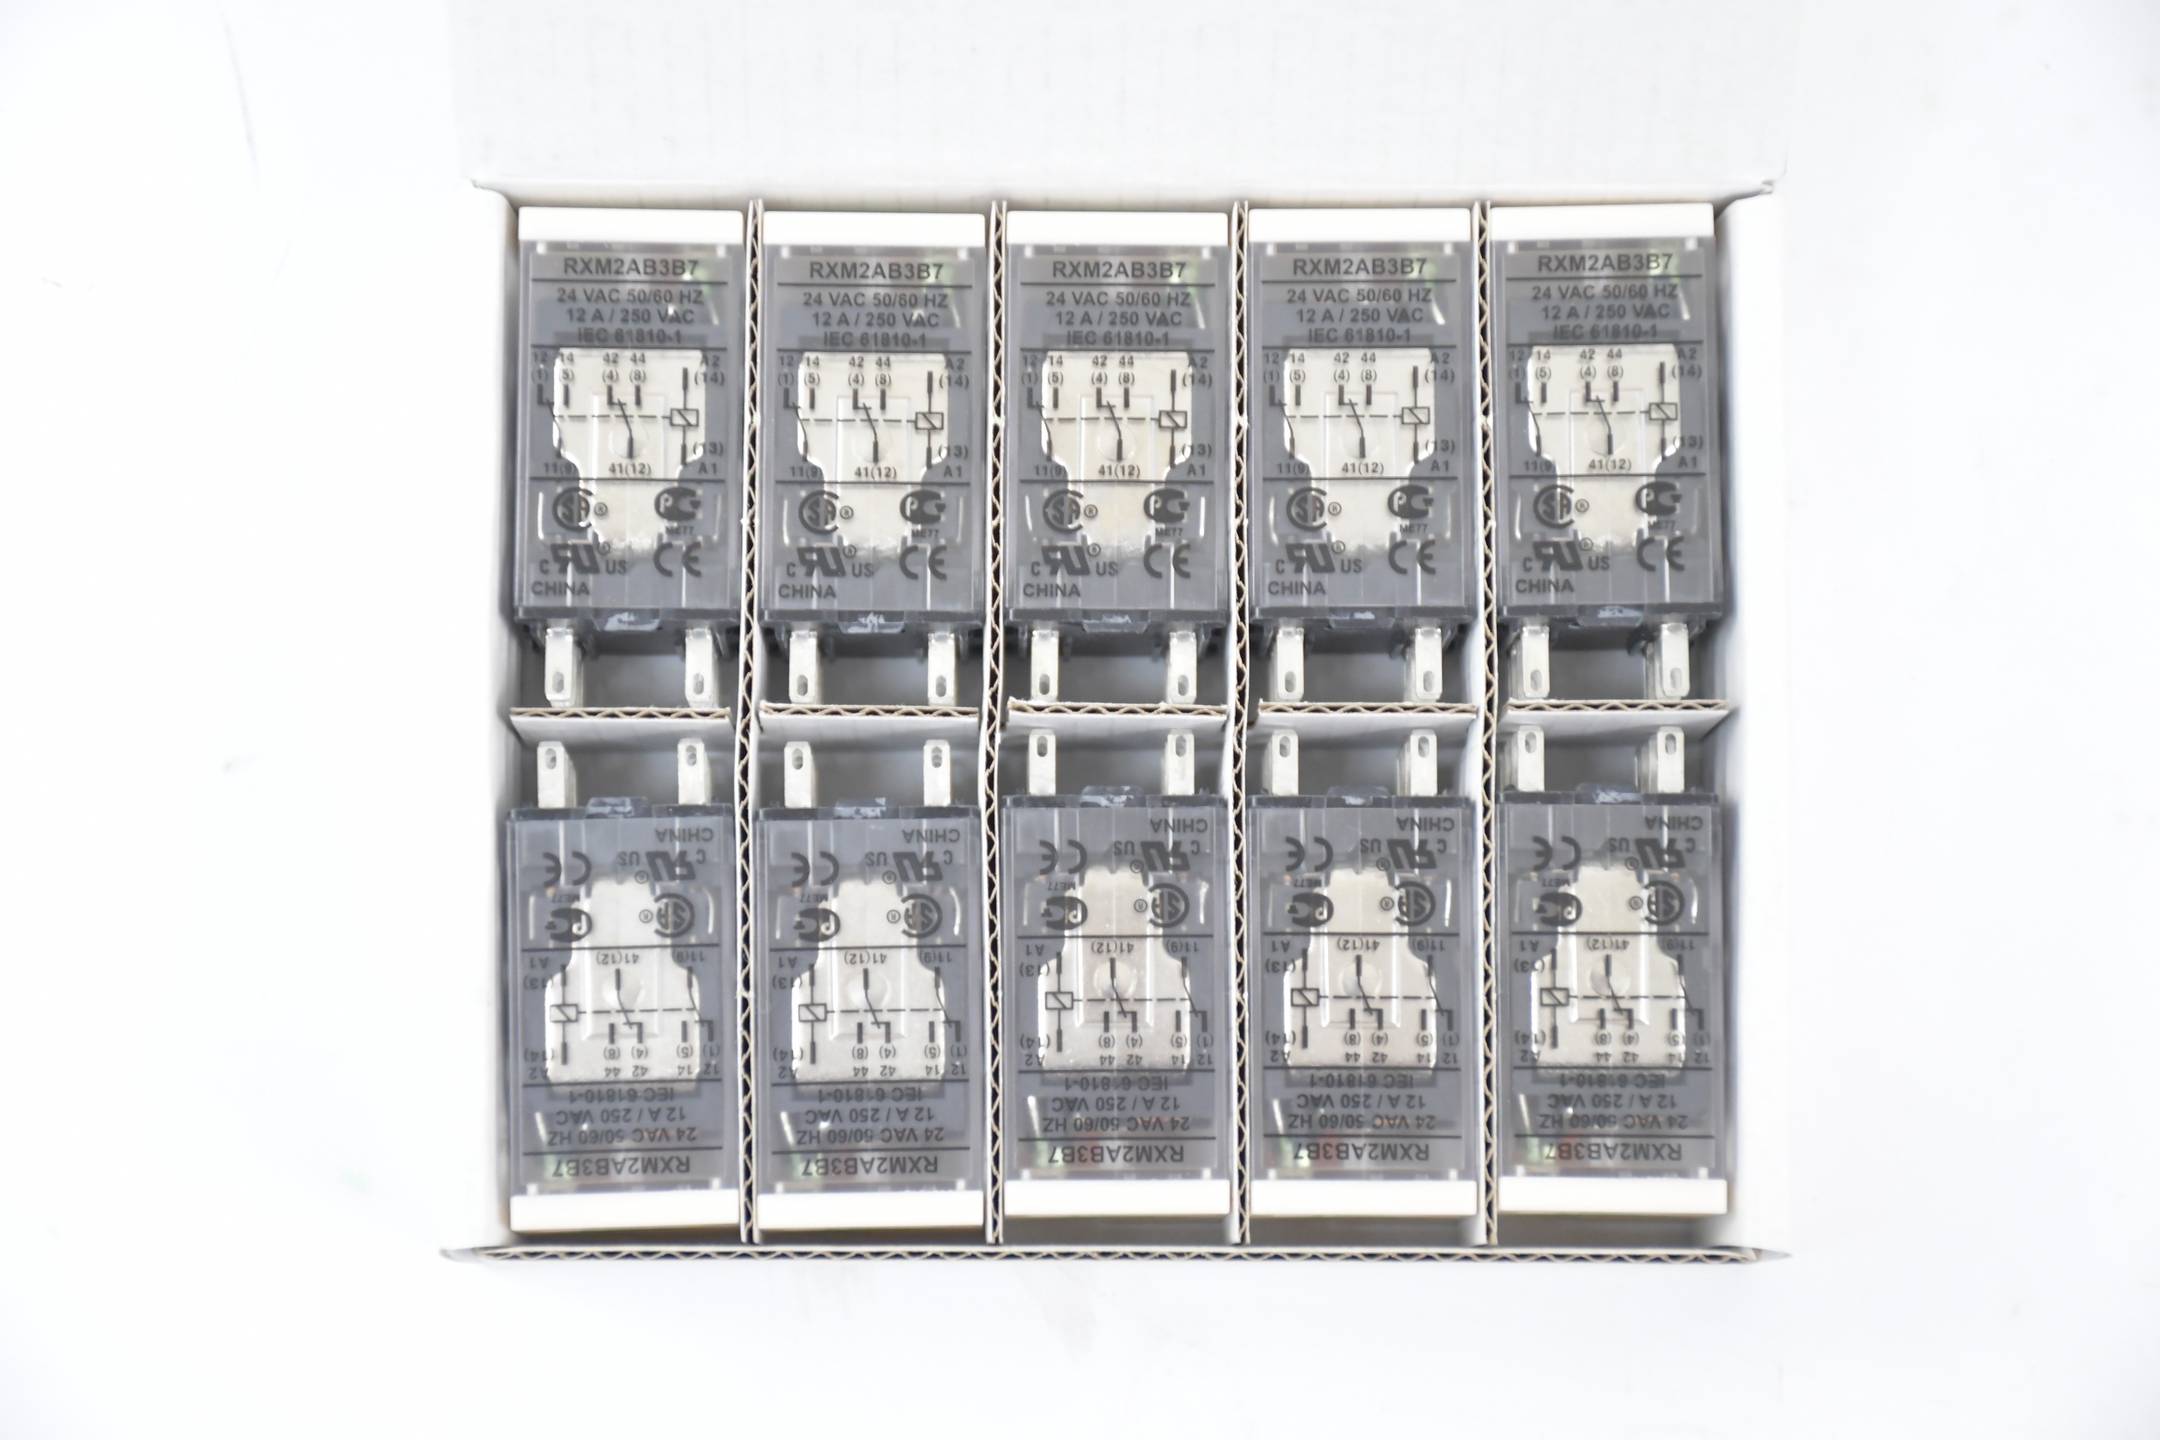 Schneider Electric Zelio Miniatur Relais 10 Stück RXM2AB3B7 ( 921710 )